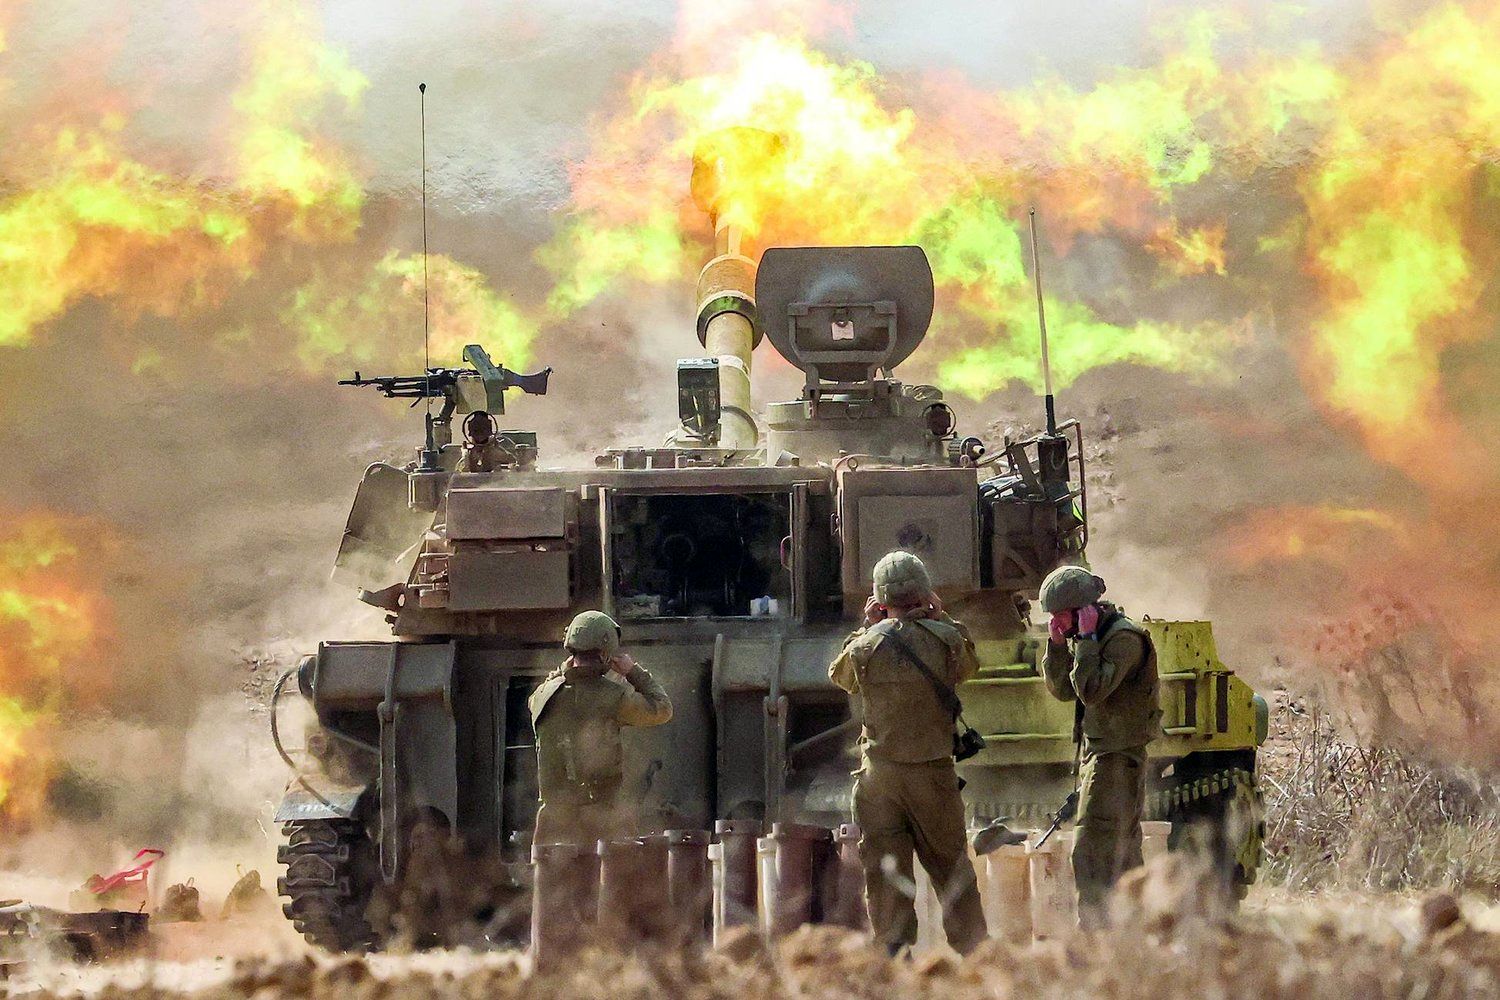  آغاز جنگ از سوی اسرائیل مهر تاییدخورد/  تل آویو: حماس توافق را نقض کرد